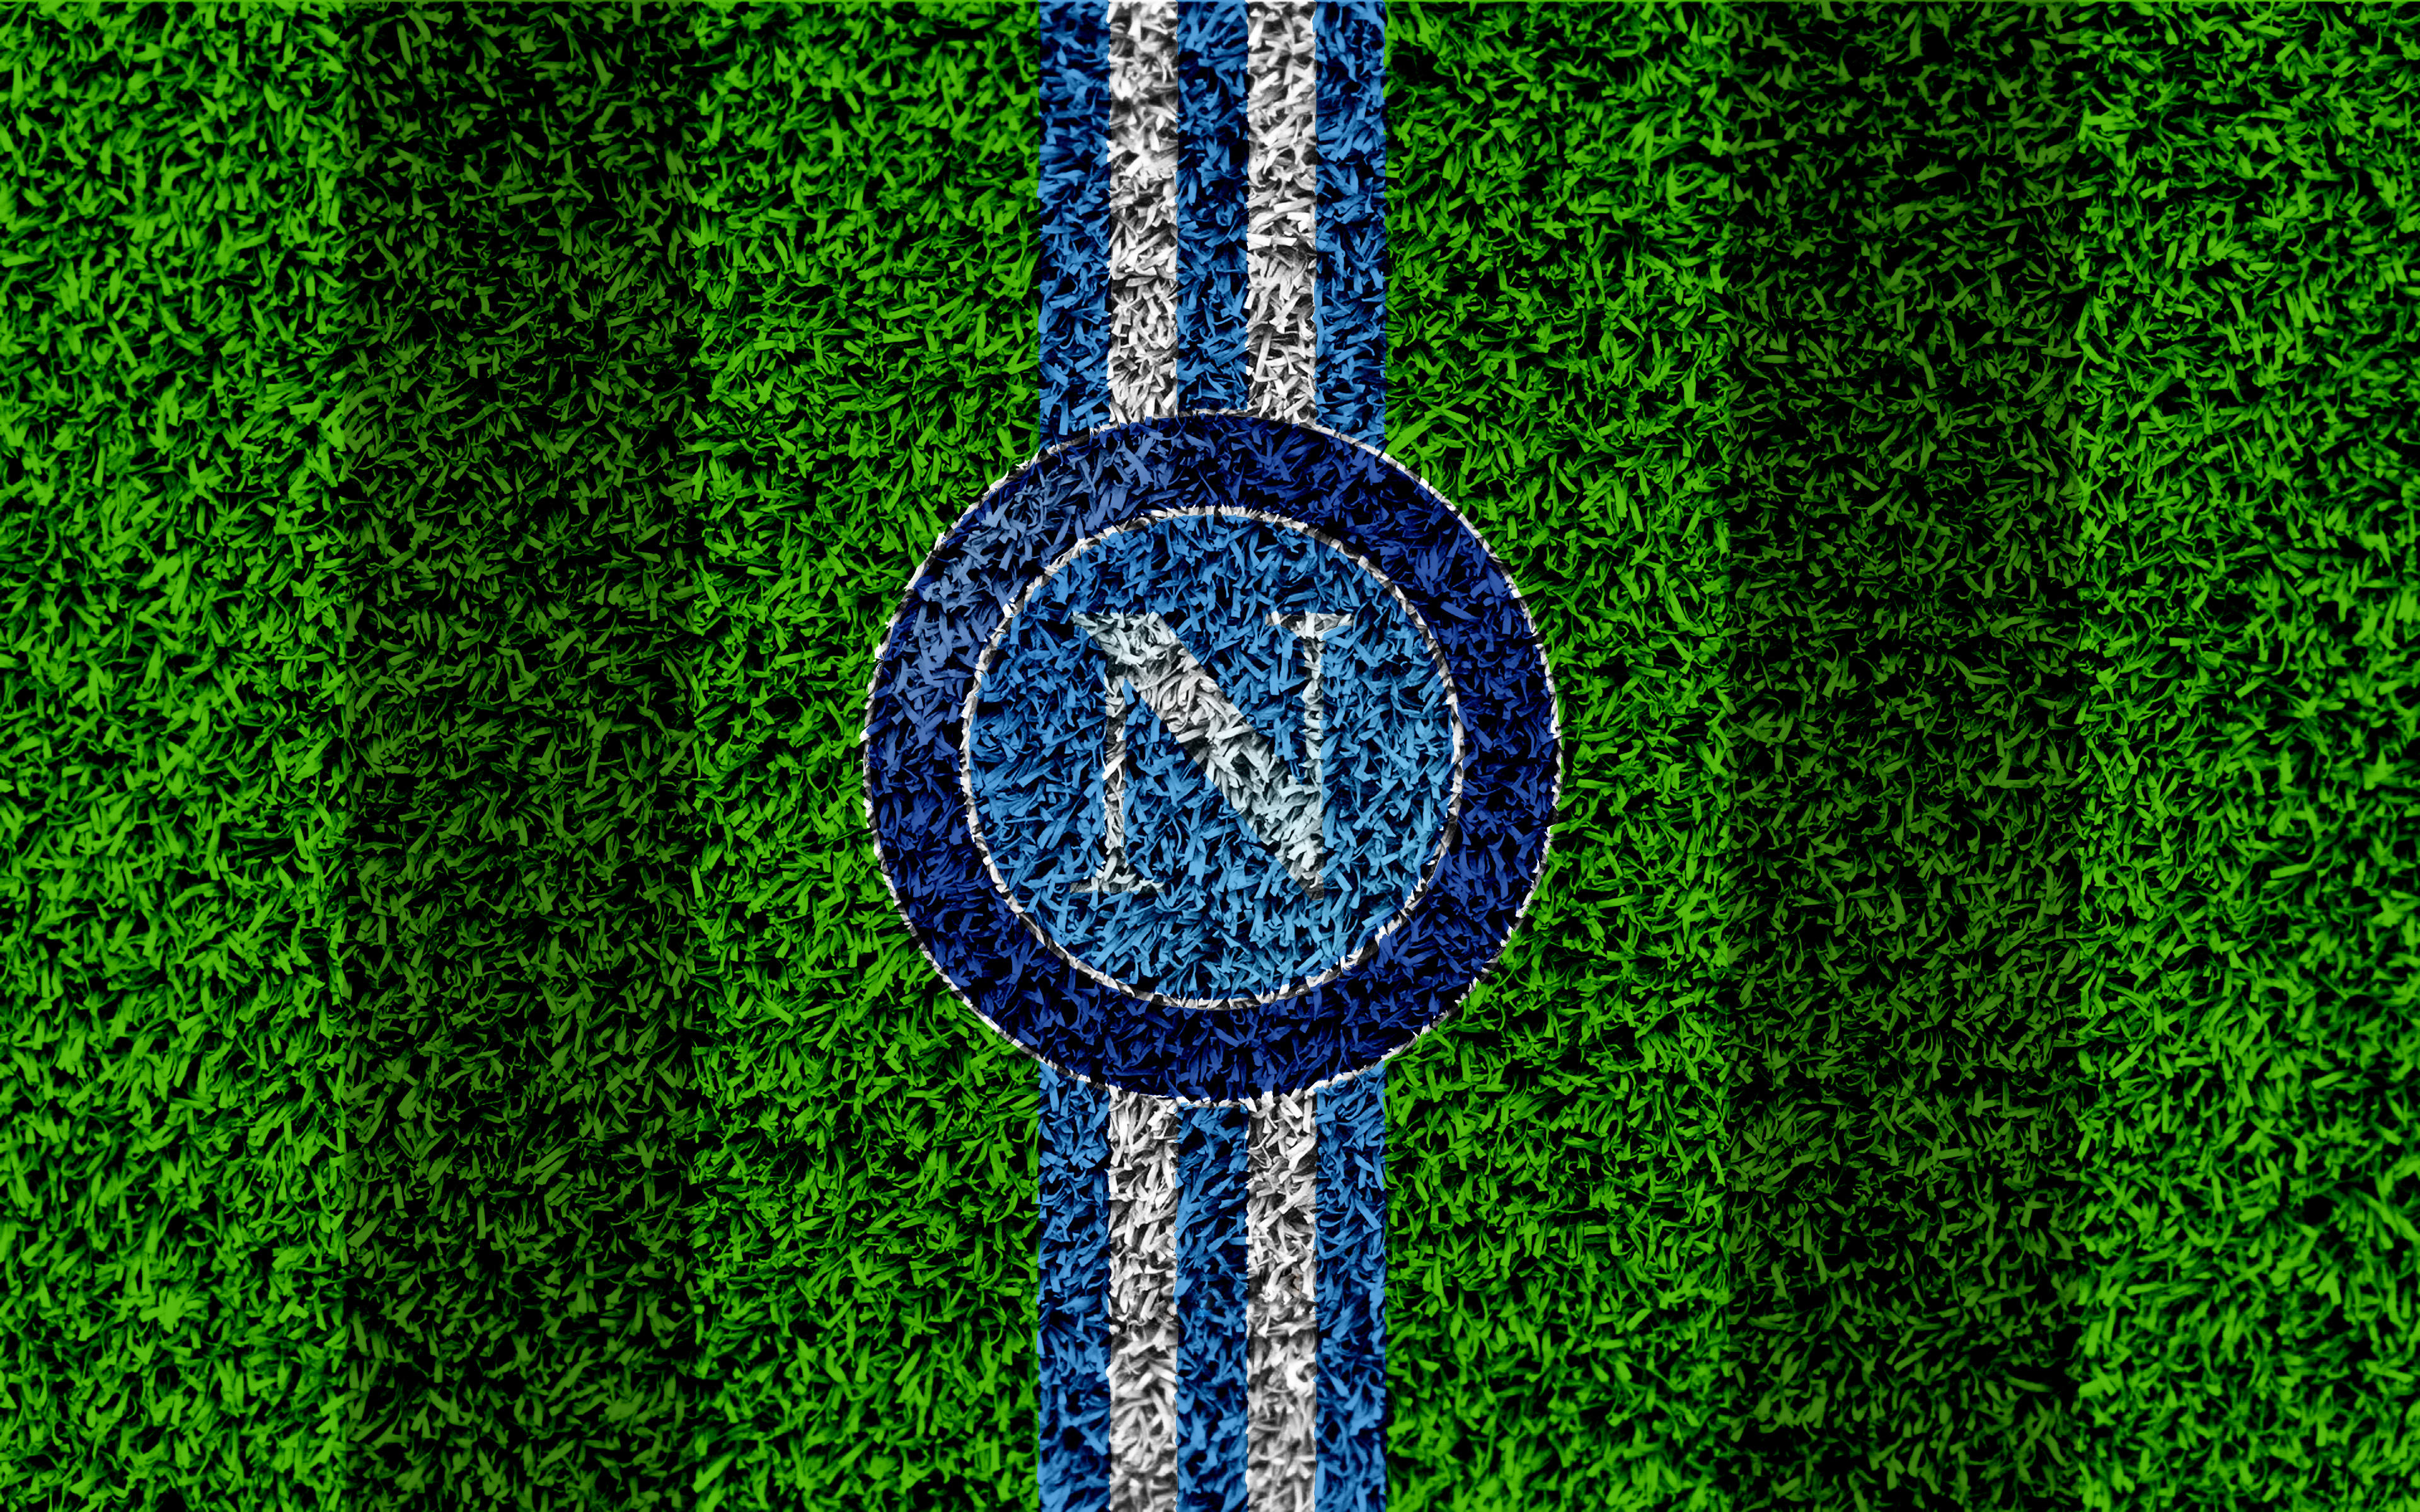 Logo S S C Napoli Soccer 3840x2400